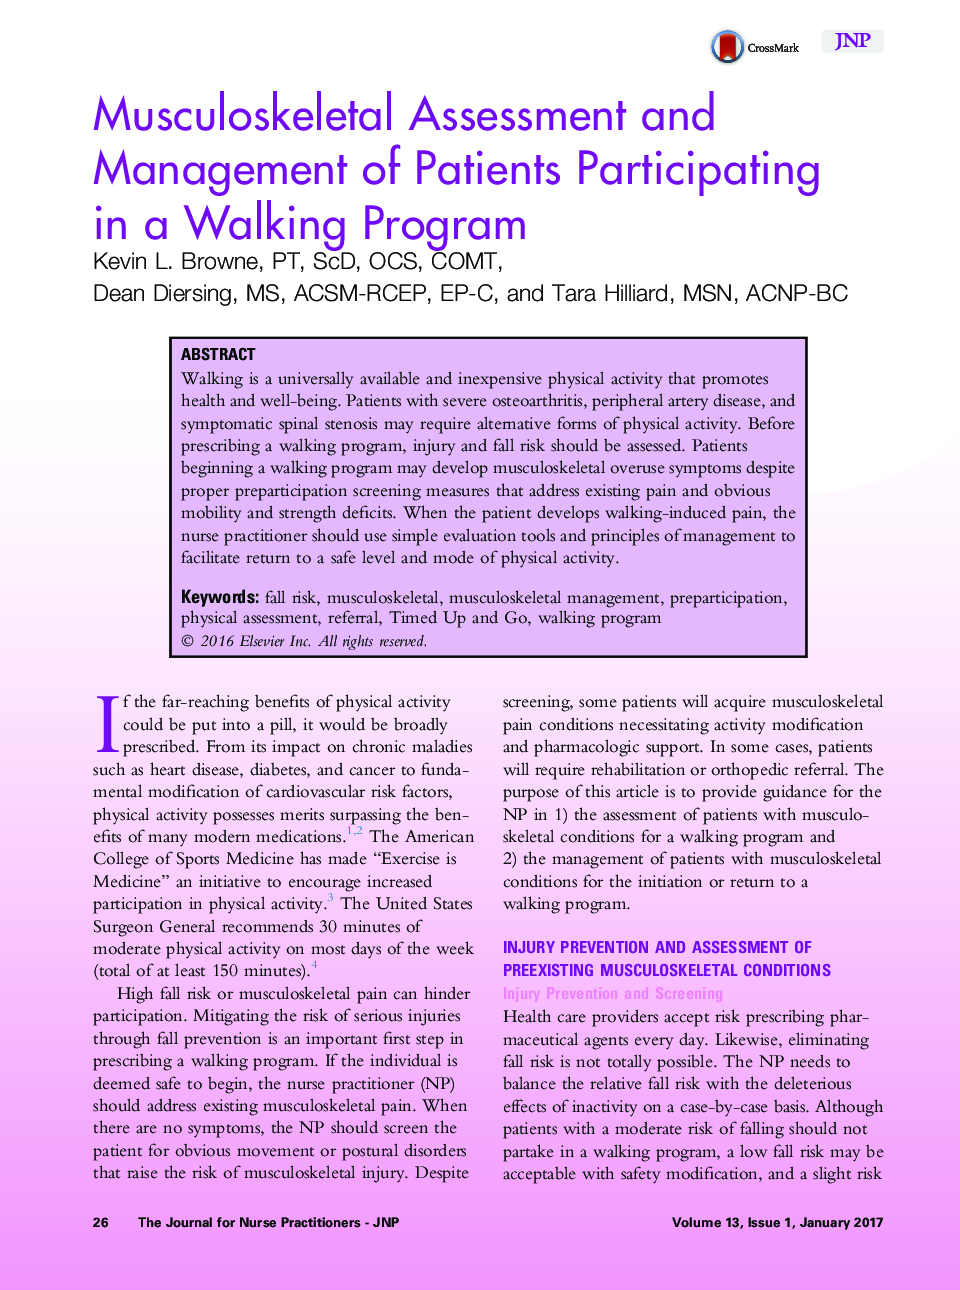 ارزیابی و مدیریت اسکلتی-عضلانی بیماران شرکت کننده در یک برنامه پیاده روی 